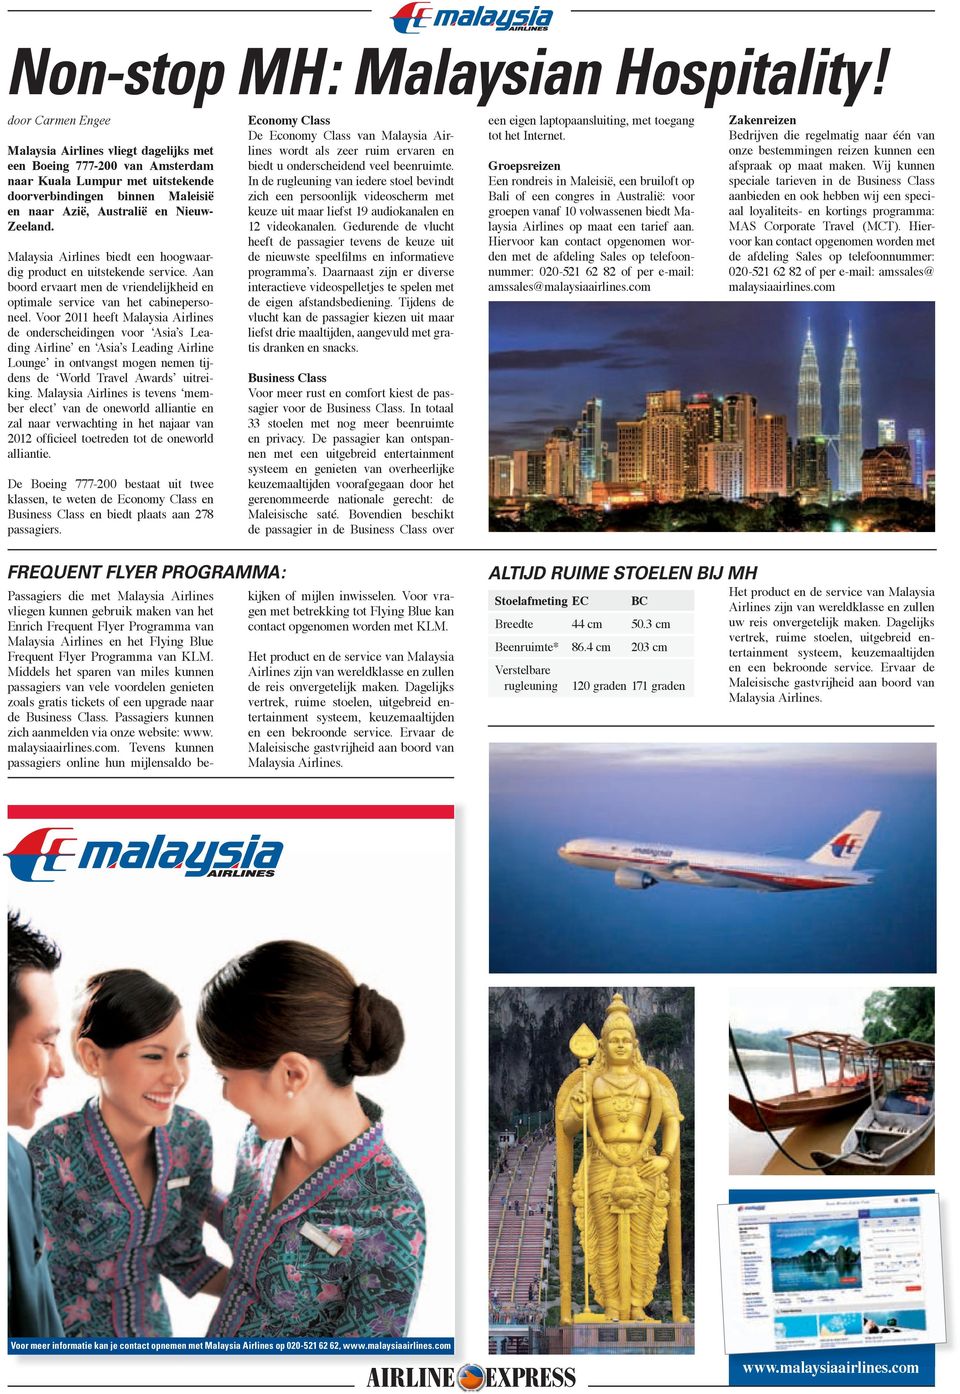 Malaysia Airlines biedt een hoogwaardig product en uitstekende service. Aan boord ervaart men de vriendelijkheid en optimale service van het cabinepersoneel.